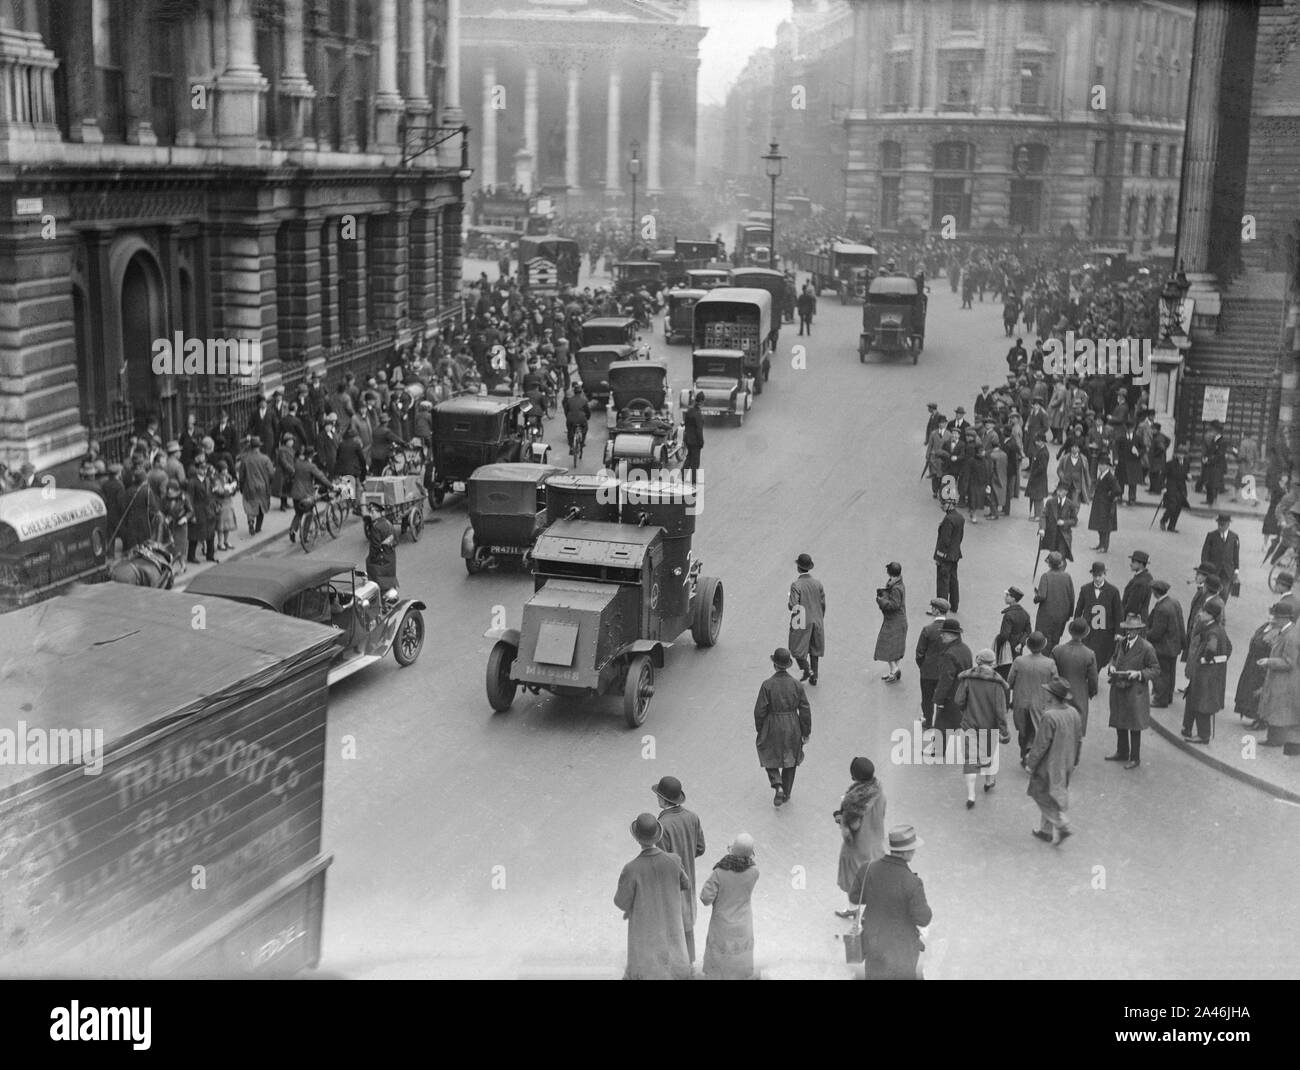 12 mai 1926. Londres, Angleterre. Des troupes dans des véhicules blindés dans les rues de Londres dans une tentative de garder le contrôle et maintenir les services de base, au cours de la grève générale au Royaume-Uni, qui a duré du 3 au 12 mai 1926. Banque D'Images